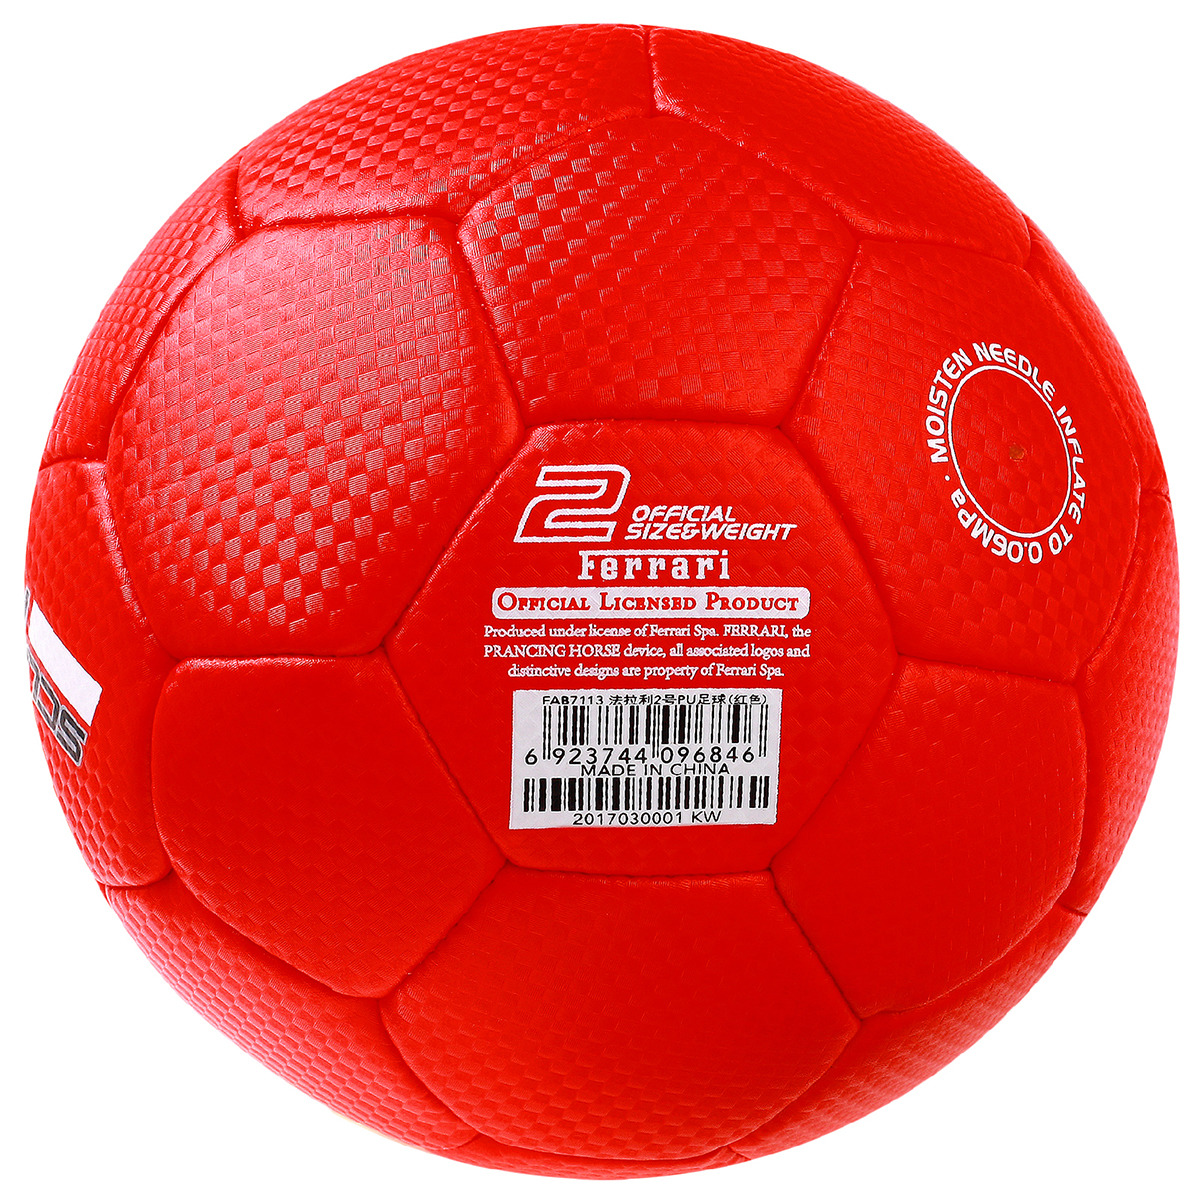 Полиуретан мяч. Мяч Феррари красный. Футбольный мяч Феррари. Термополиуретан мяч футбольный. Мяч полиуретановый.